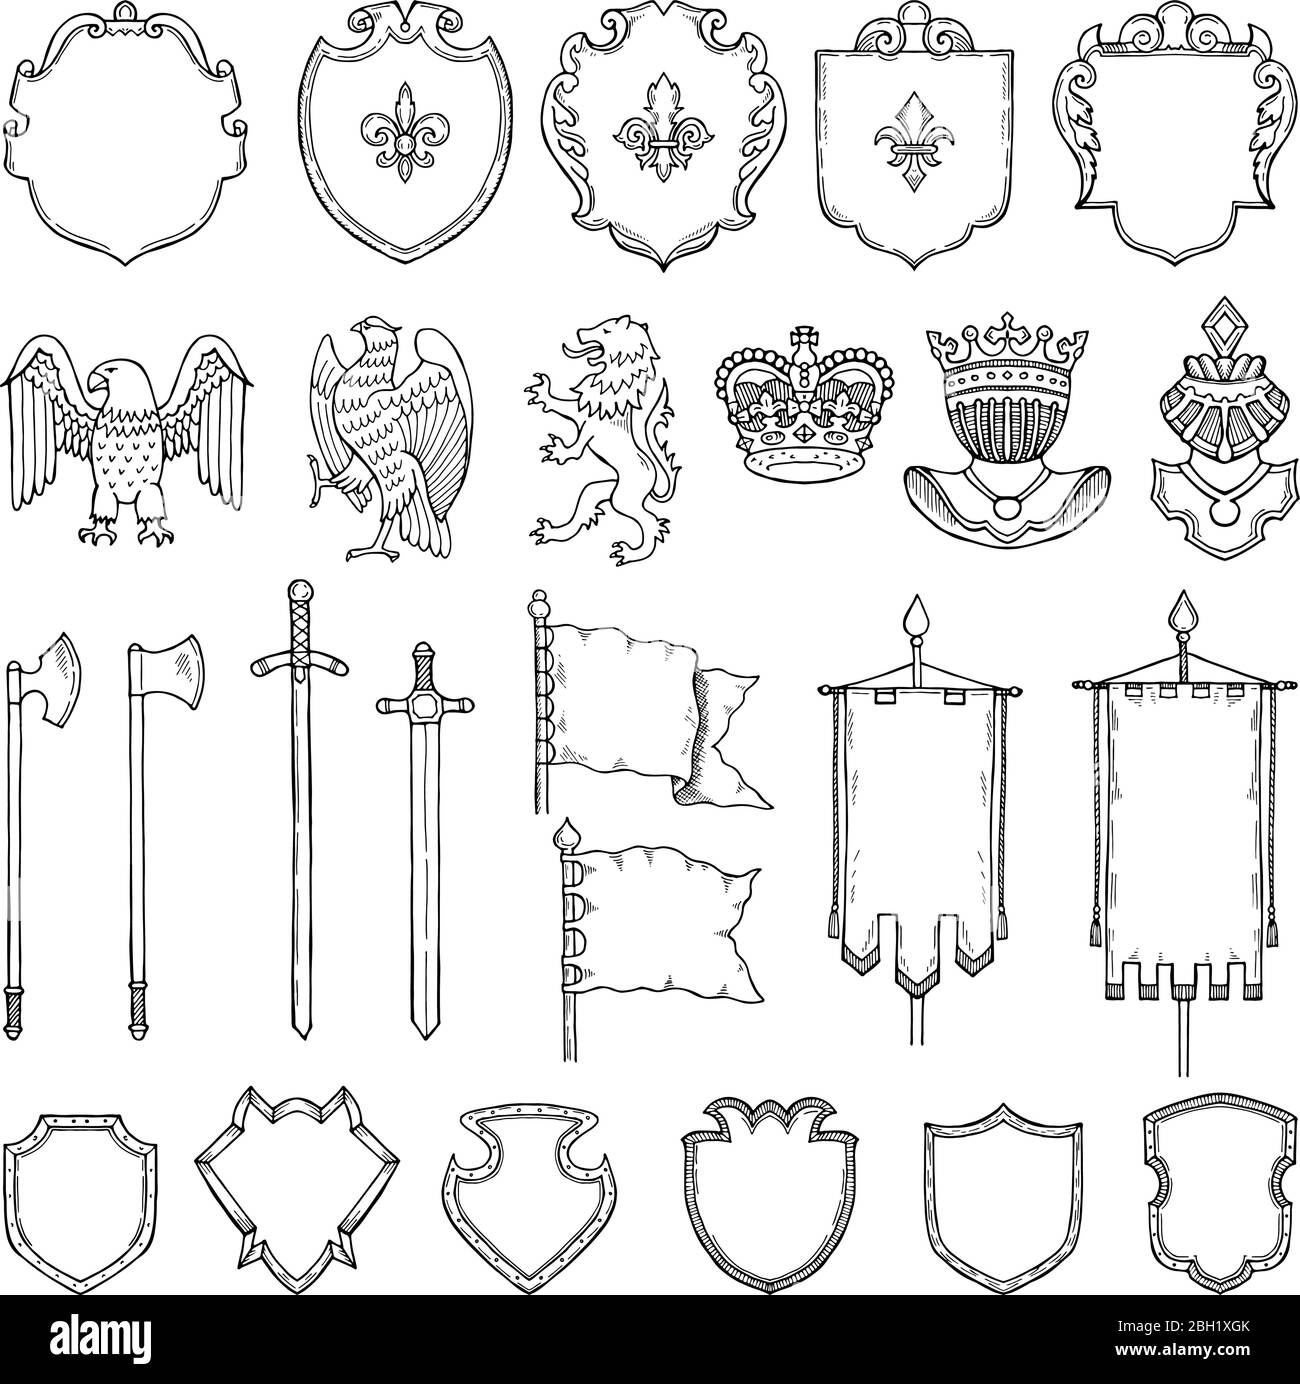 Mittelalterliche heraldische Symbole isolieren sich auf Weiß. Handgezeichnete Vektorgrafiken. Mittelalterliches Emblem königliche Krone und altes Schwert Stock Vektor